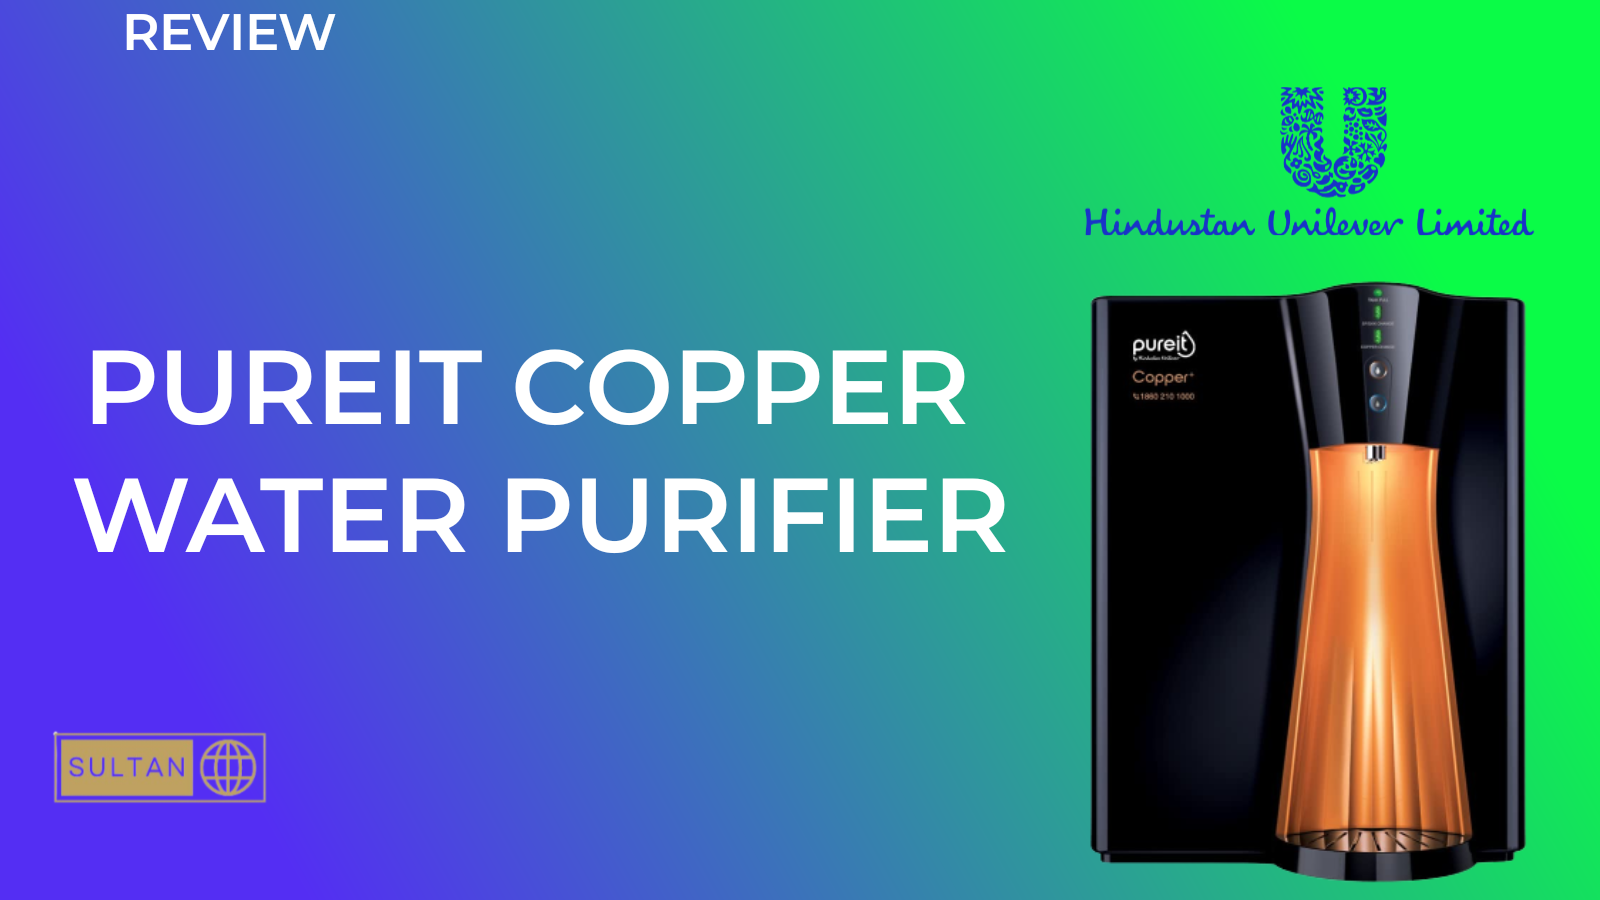 Pureit Copper+ Water Purifier